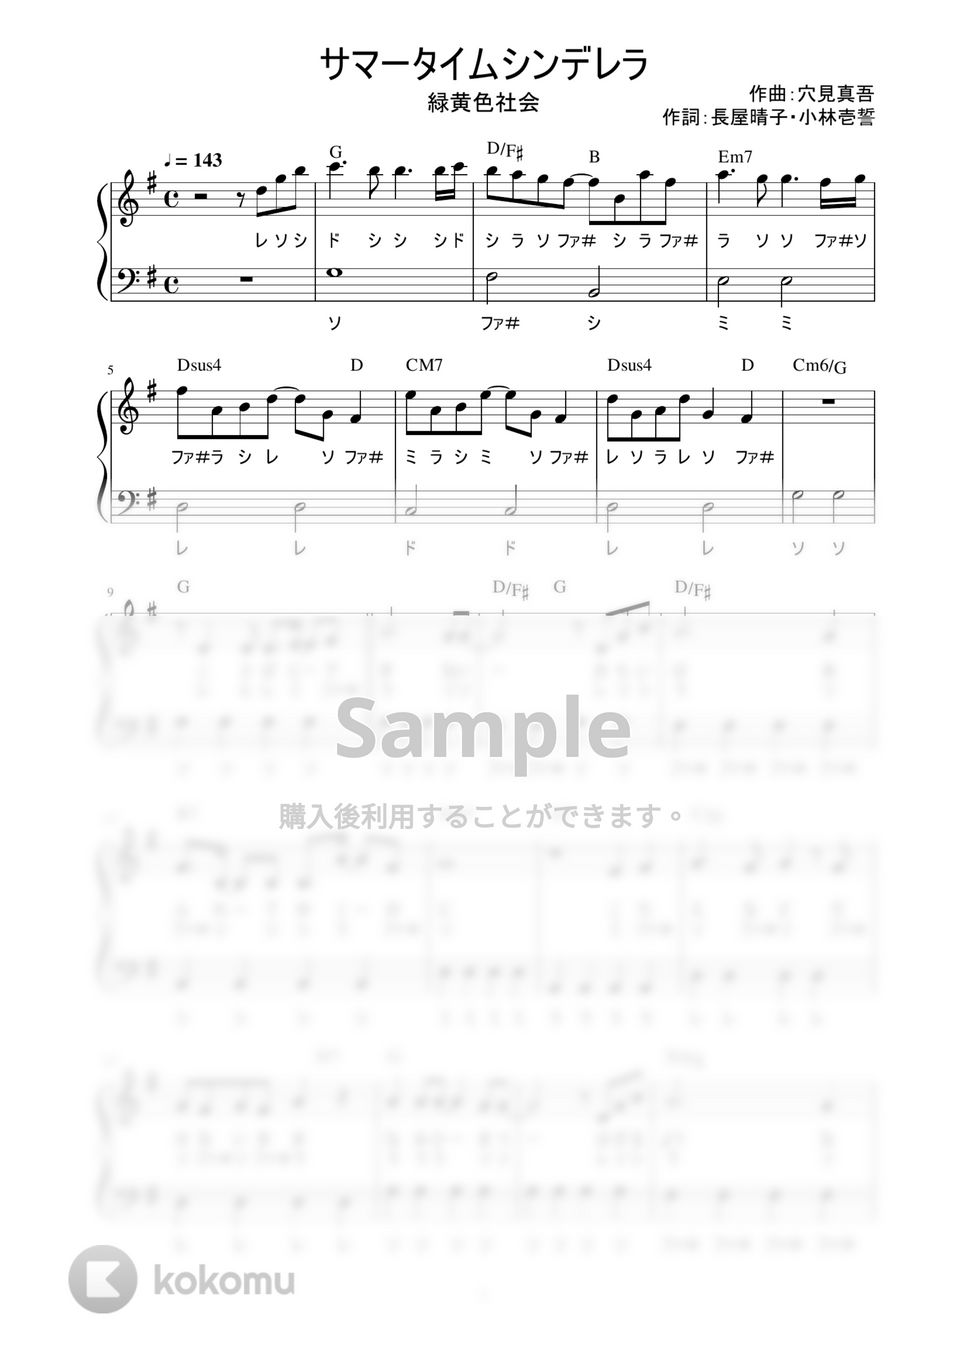 緑黄色社会 - サマータイムシンデレラ (かんたん / 歌詞付き / ドレミ付き / 初心者) by piano.tokyo